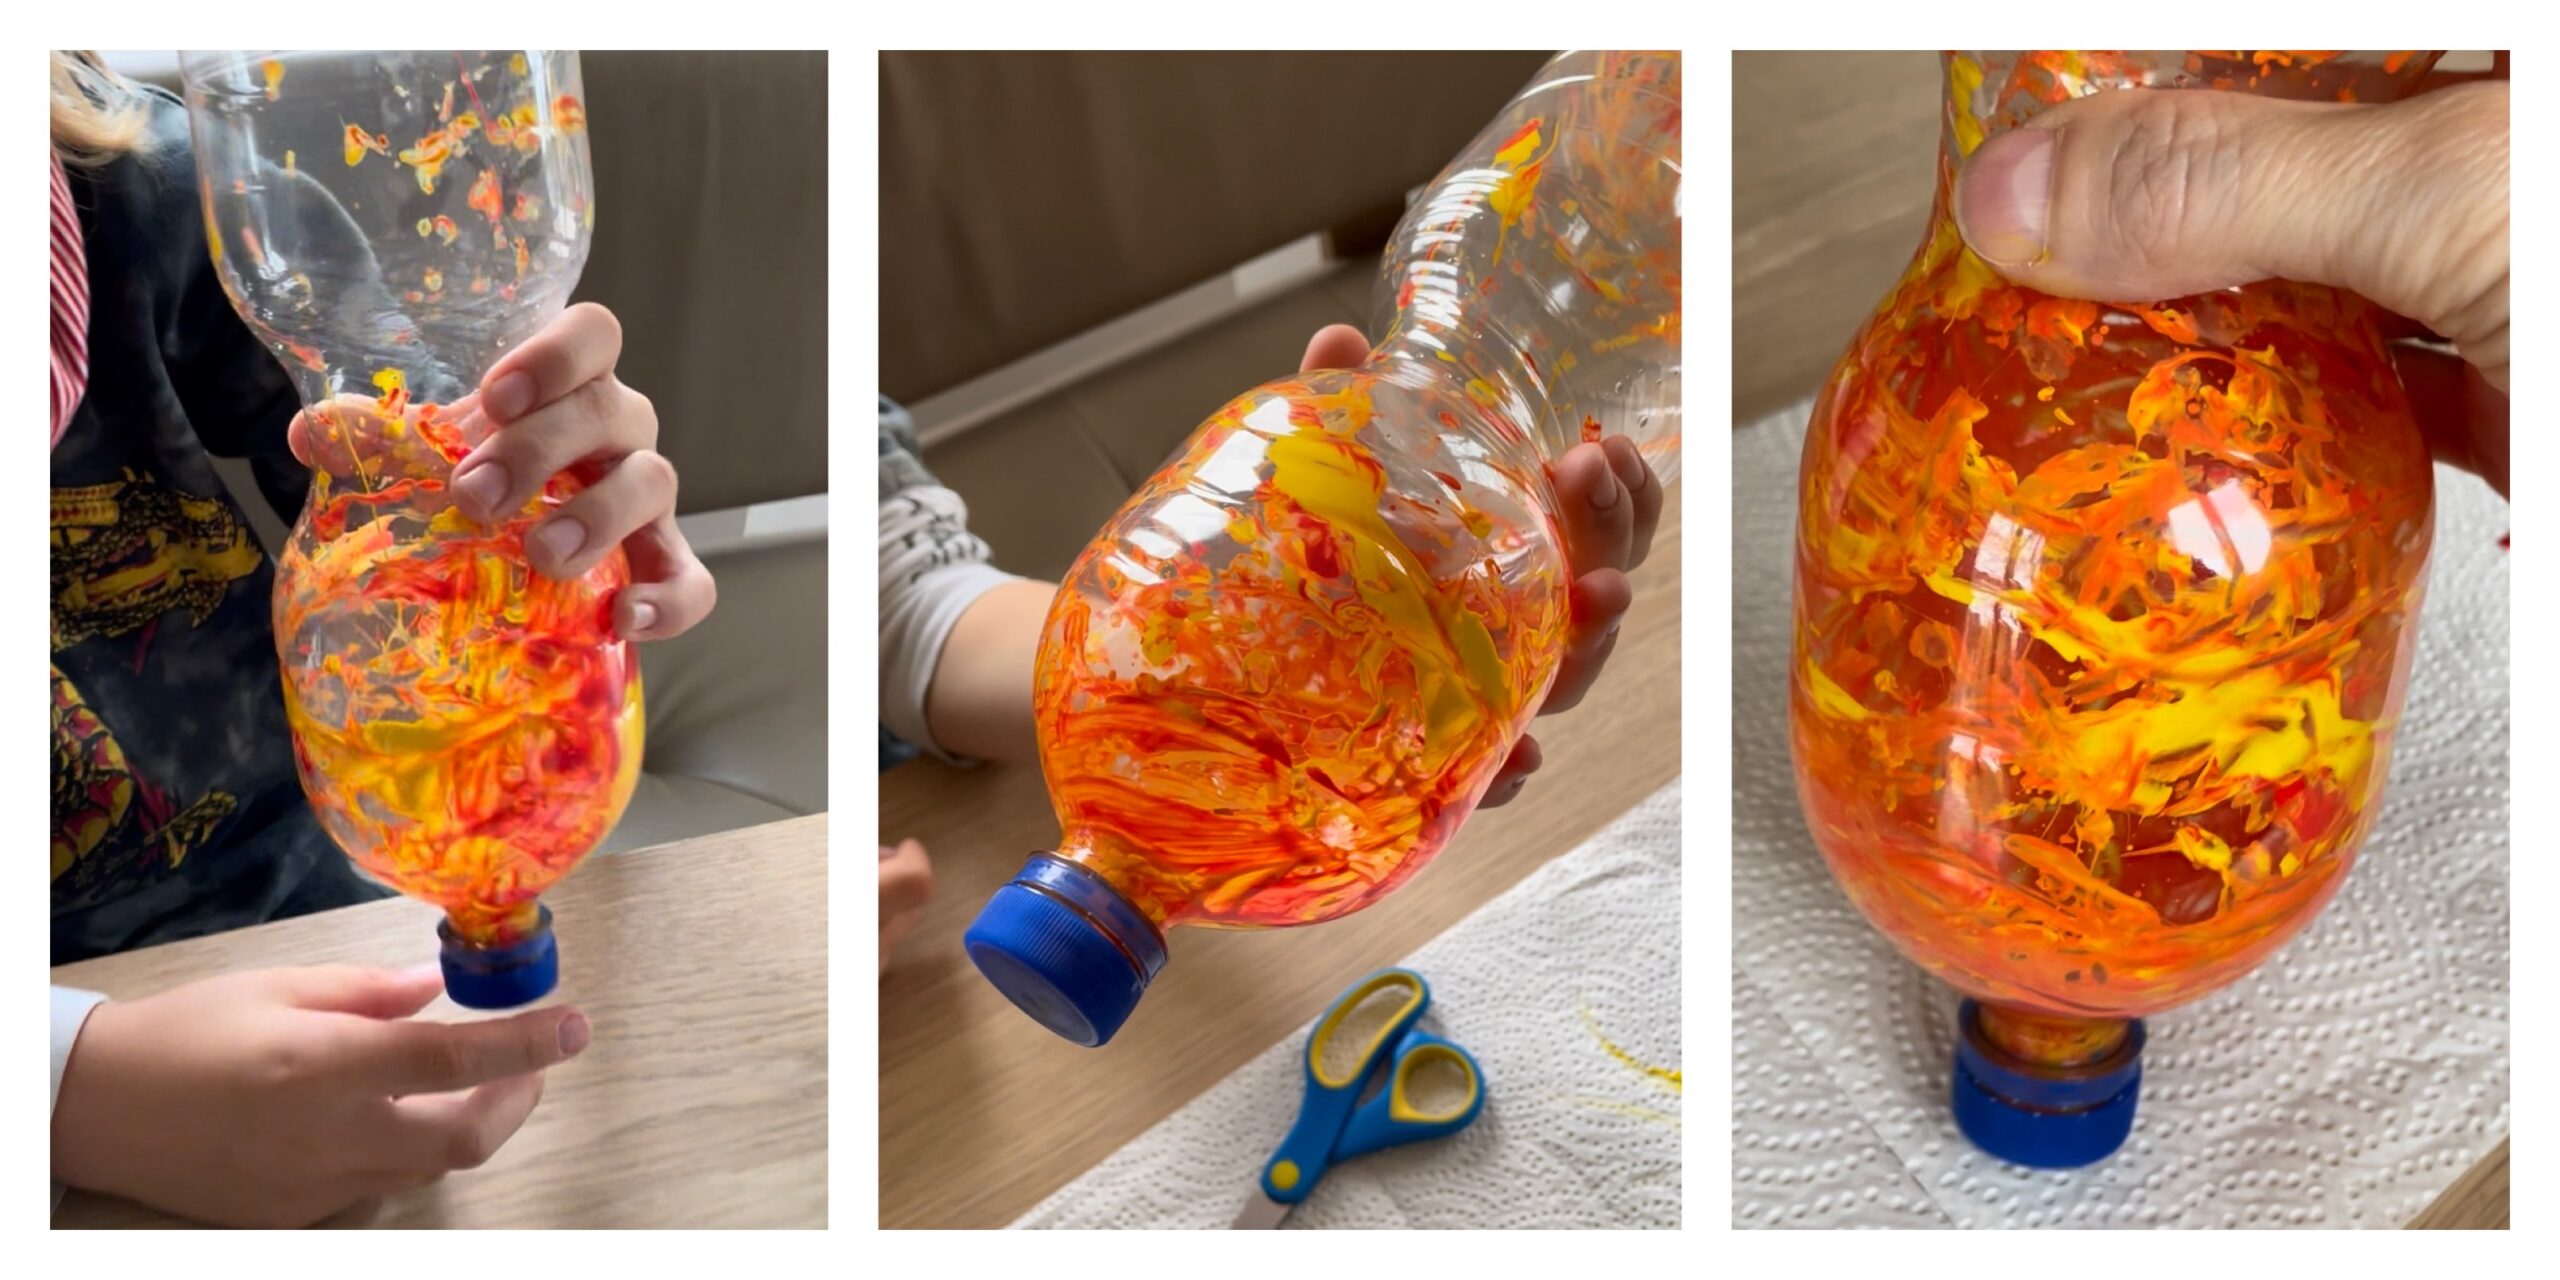 Bild zum Schritt 2 für das Bastel- und DIY-Abenteuer für Kinder: 'Jetzt schüttelt ihr die Flasche mit der Murmel hin und...'